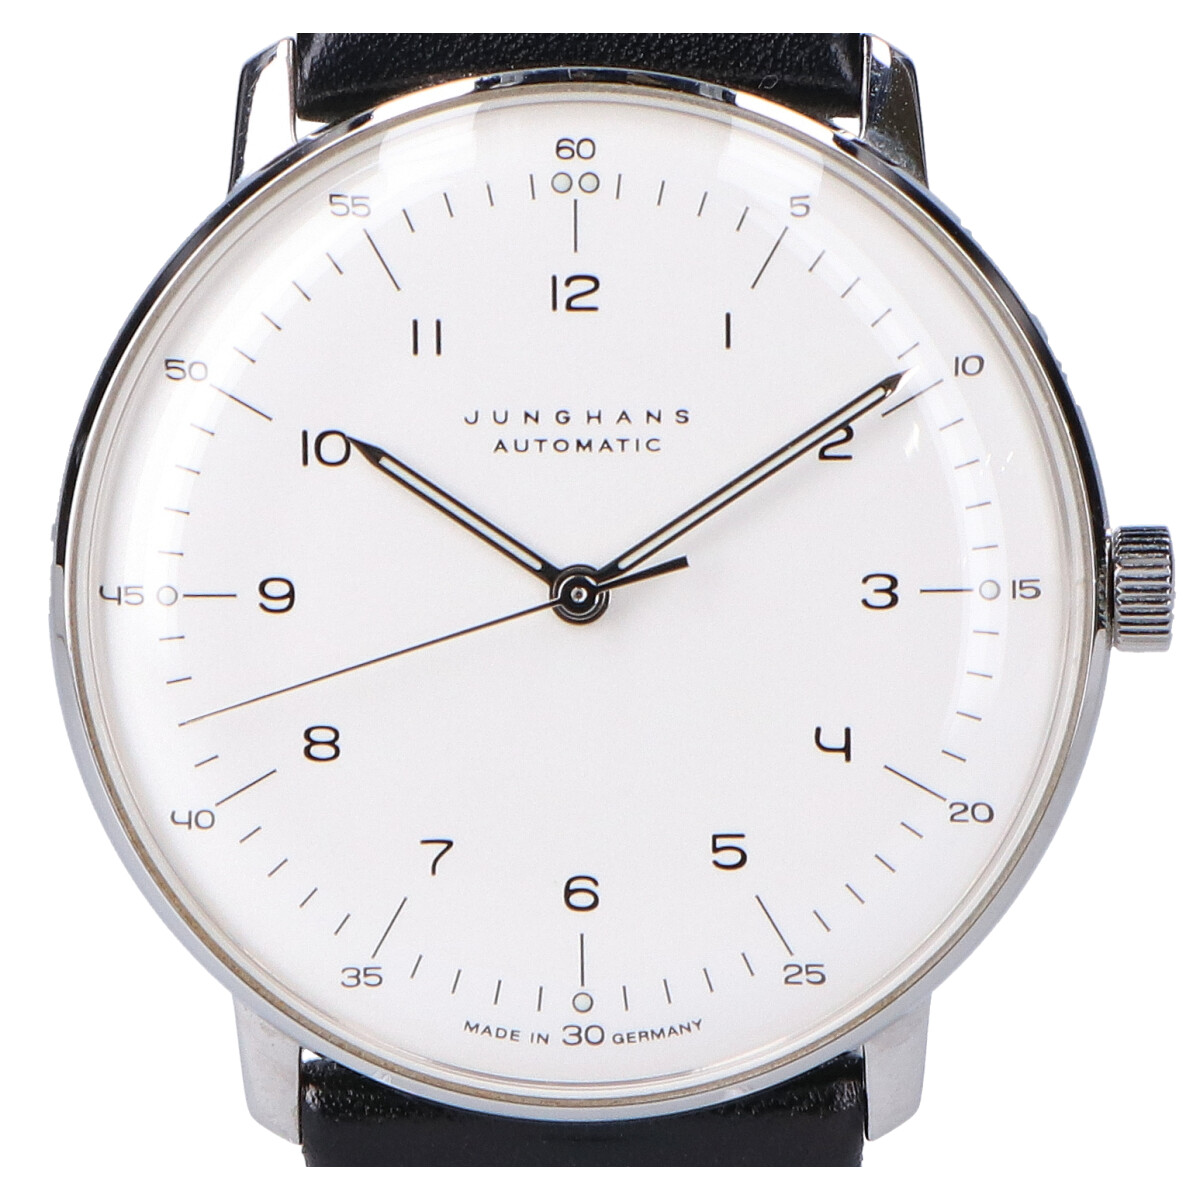 ユンハンスの027/3500.00 マックスビル 手巻き腕時計の買取実績です。